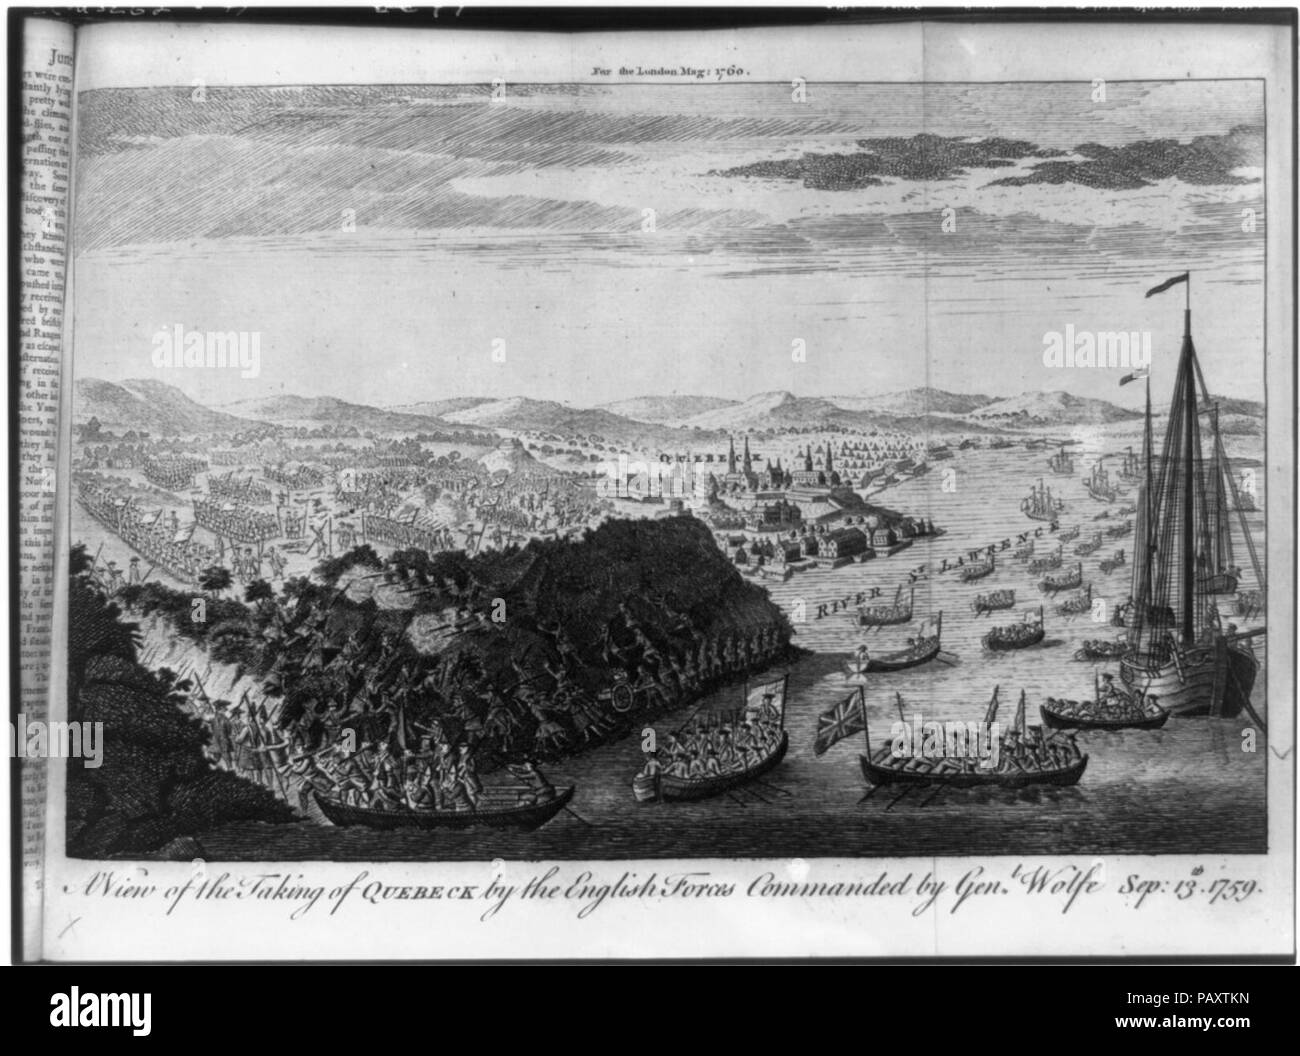 Ein Blick auf die quebeck durch die englischen Truppen von General Wolfe, Sep geboten - 13 Th, 1759 Stockfoto